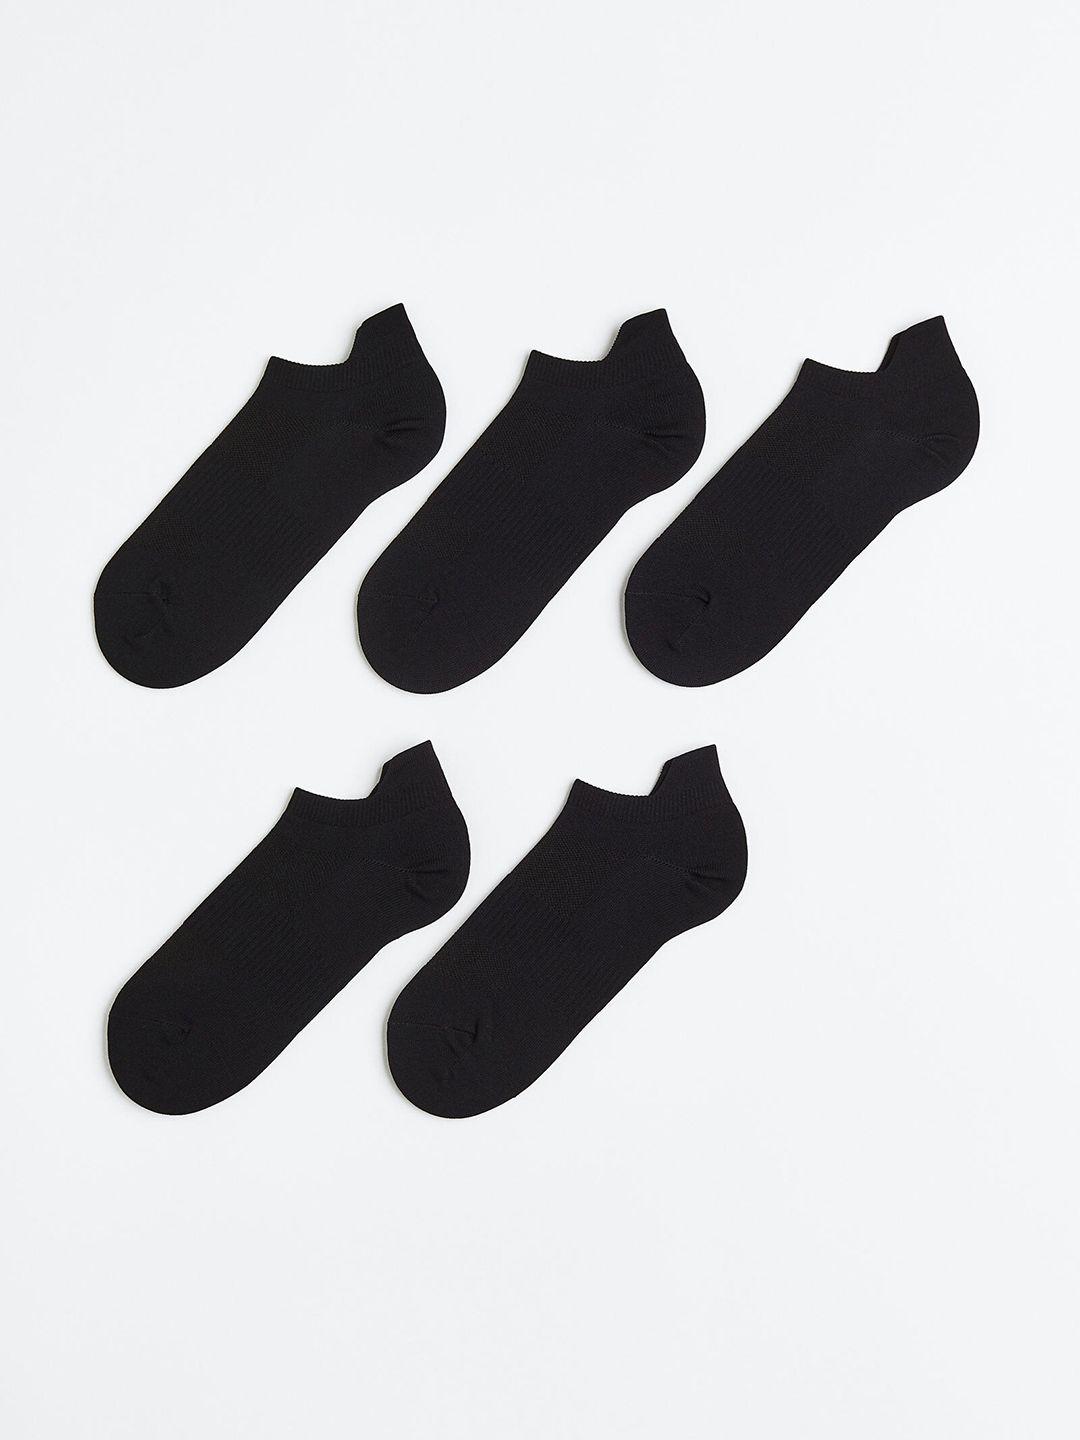 h&m men sports socks in drymove